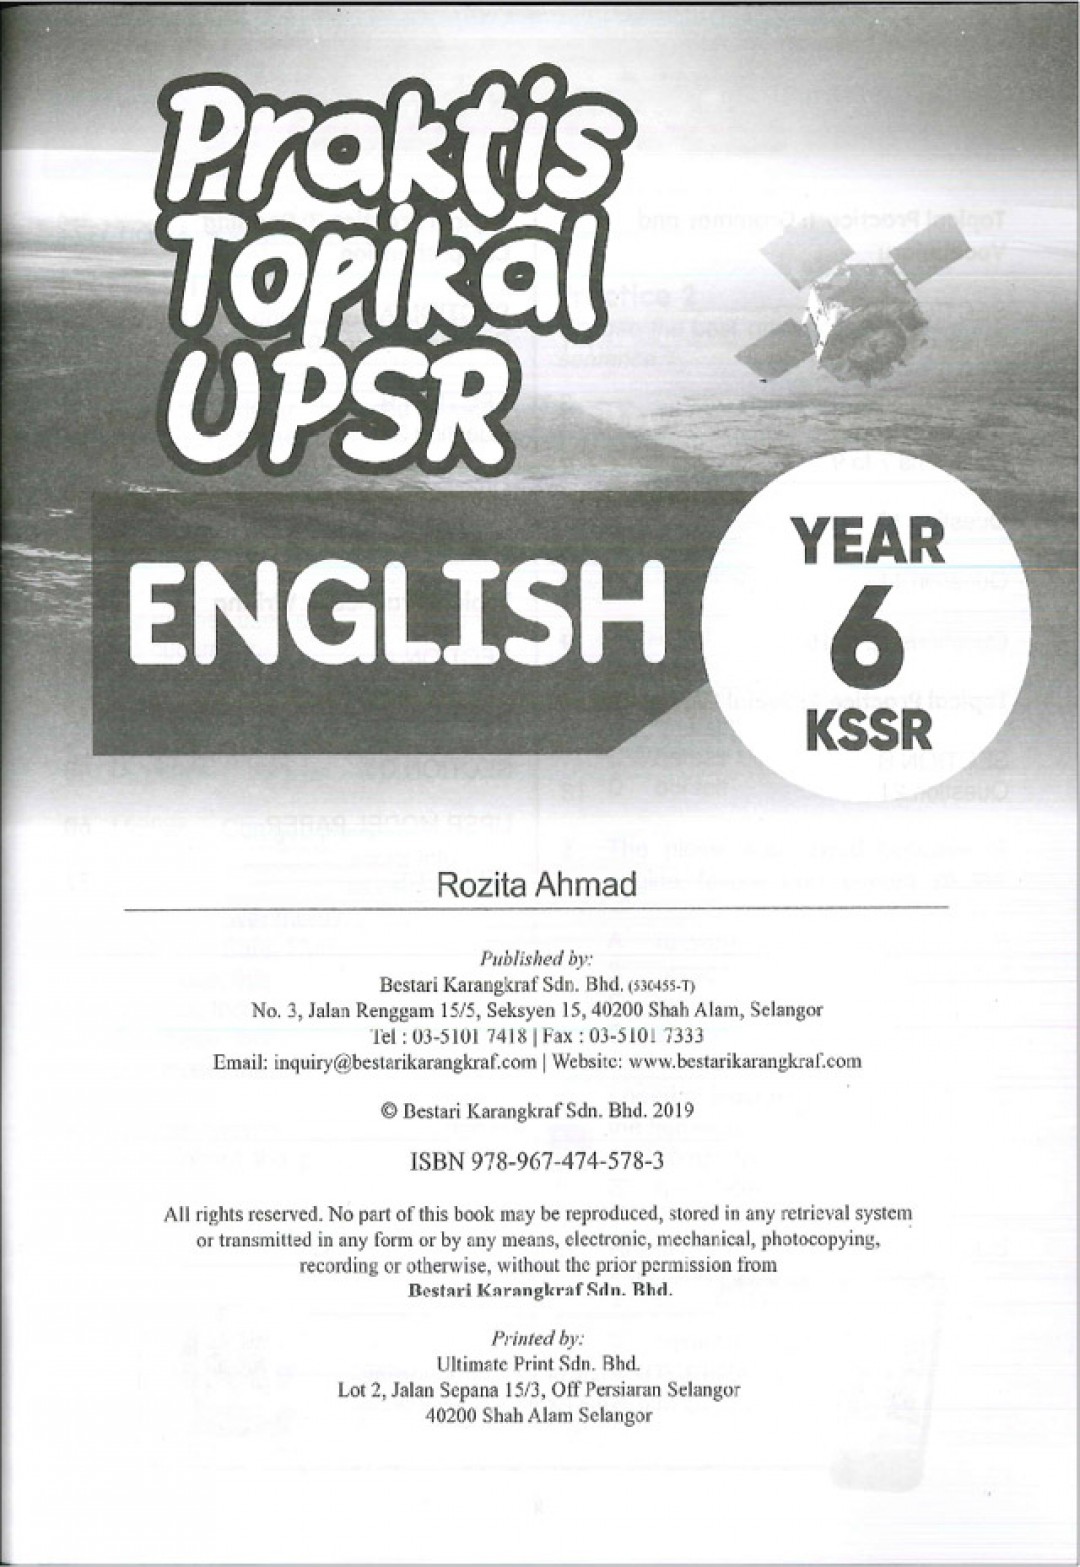 Praktis Topikal UPSR (2019) English Year 6